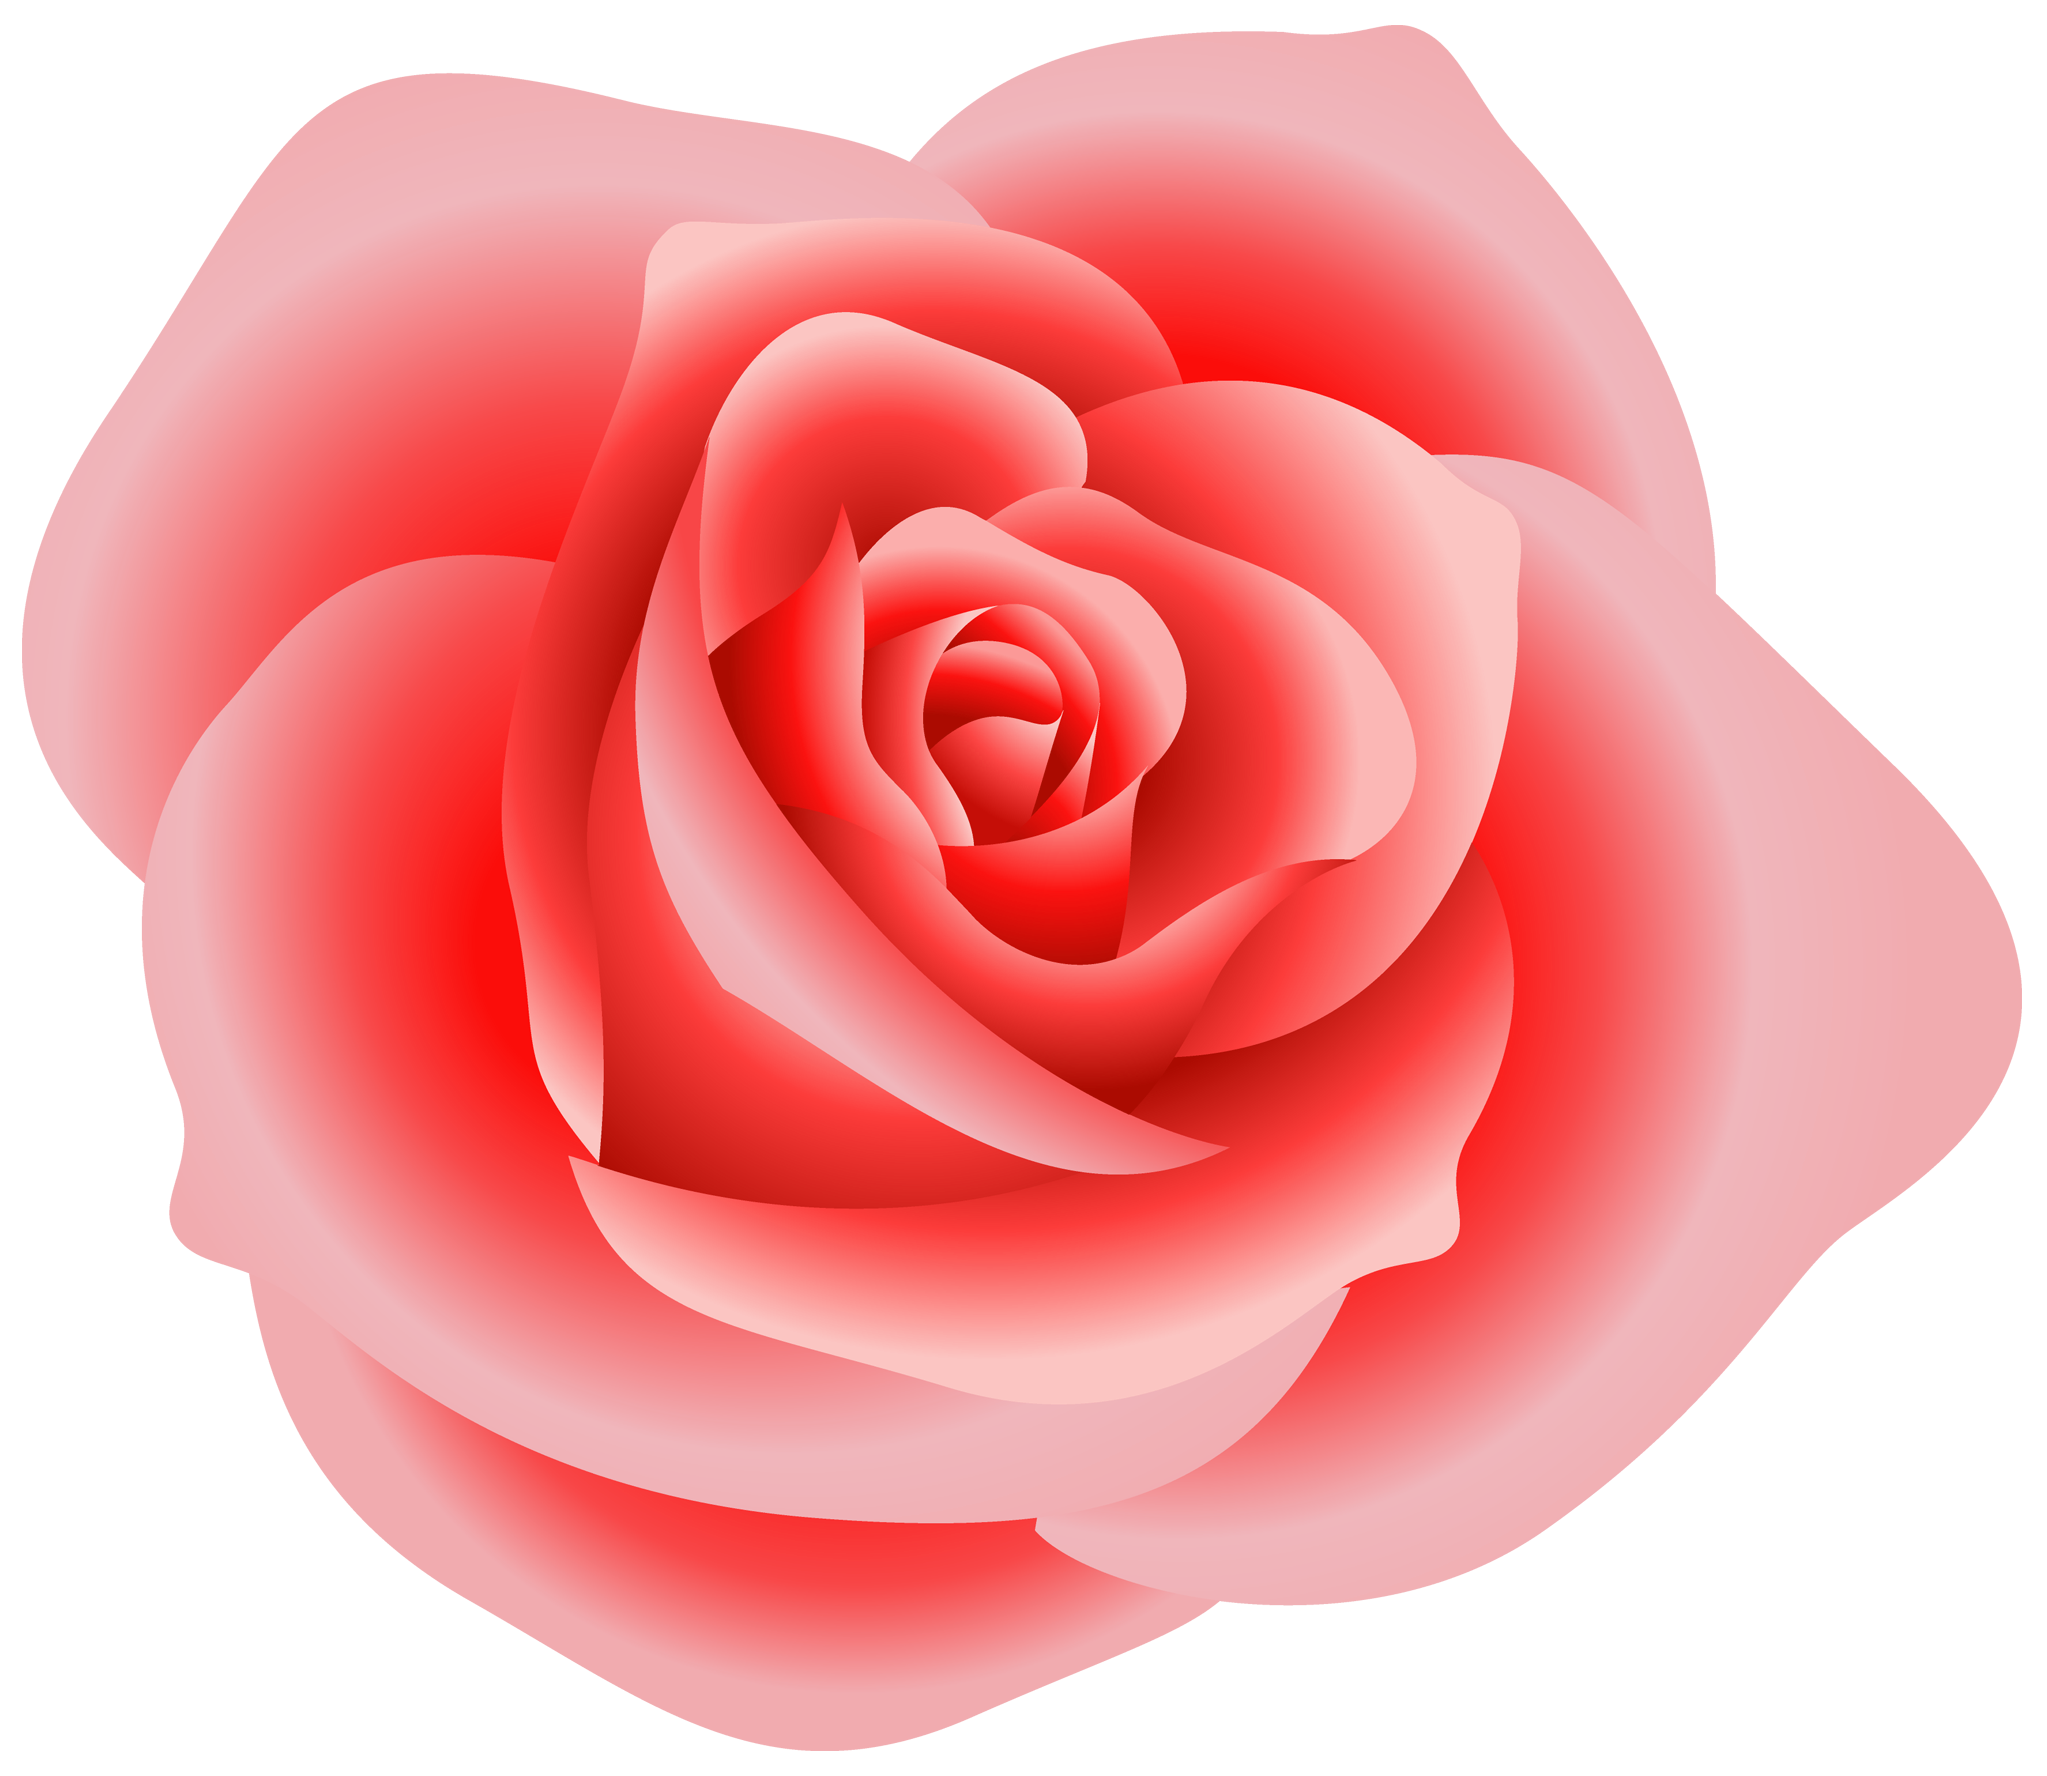 Rosa rosa PNG imagen de alta calidad | PNG Arts